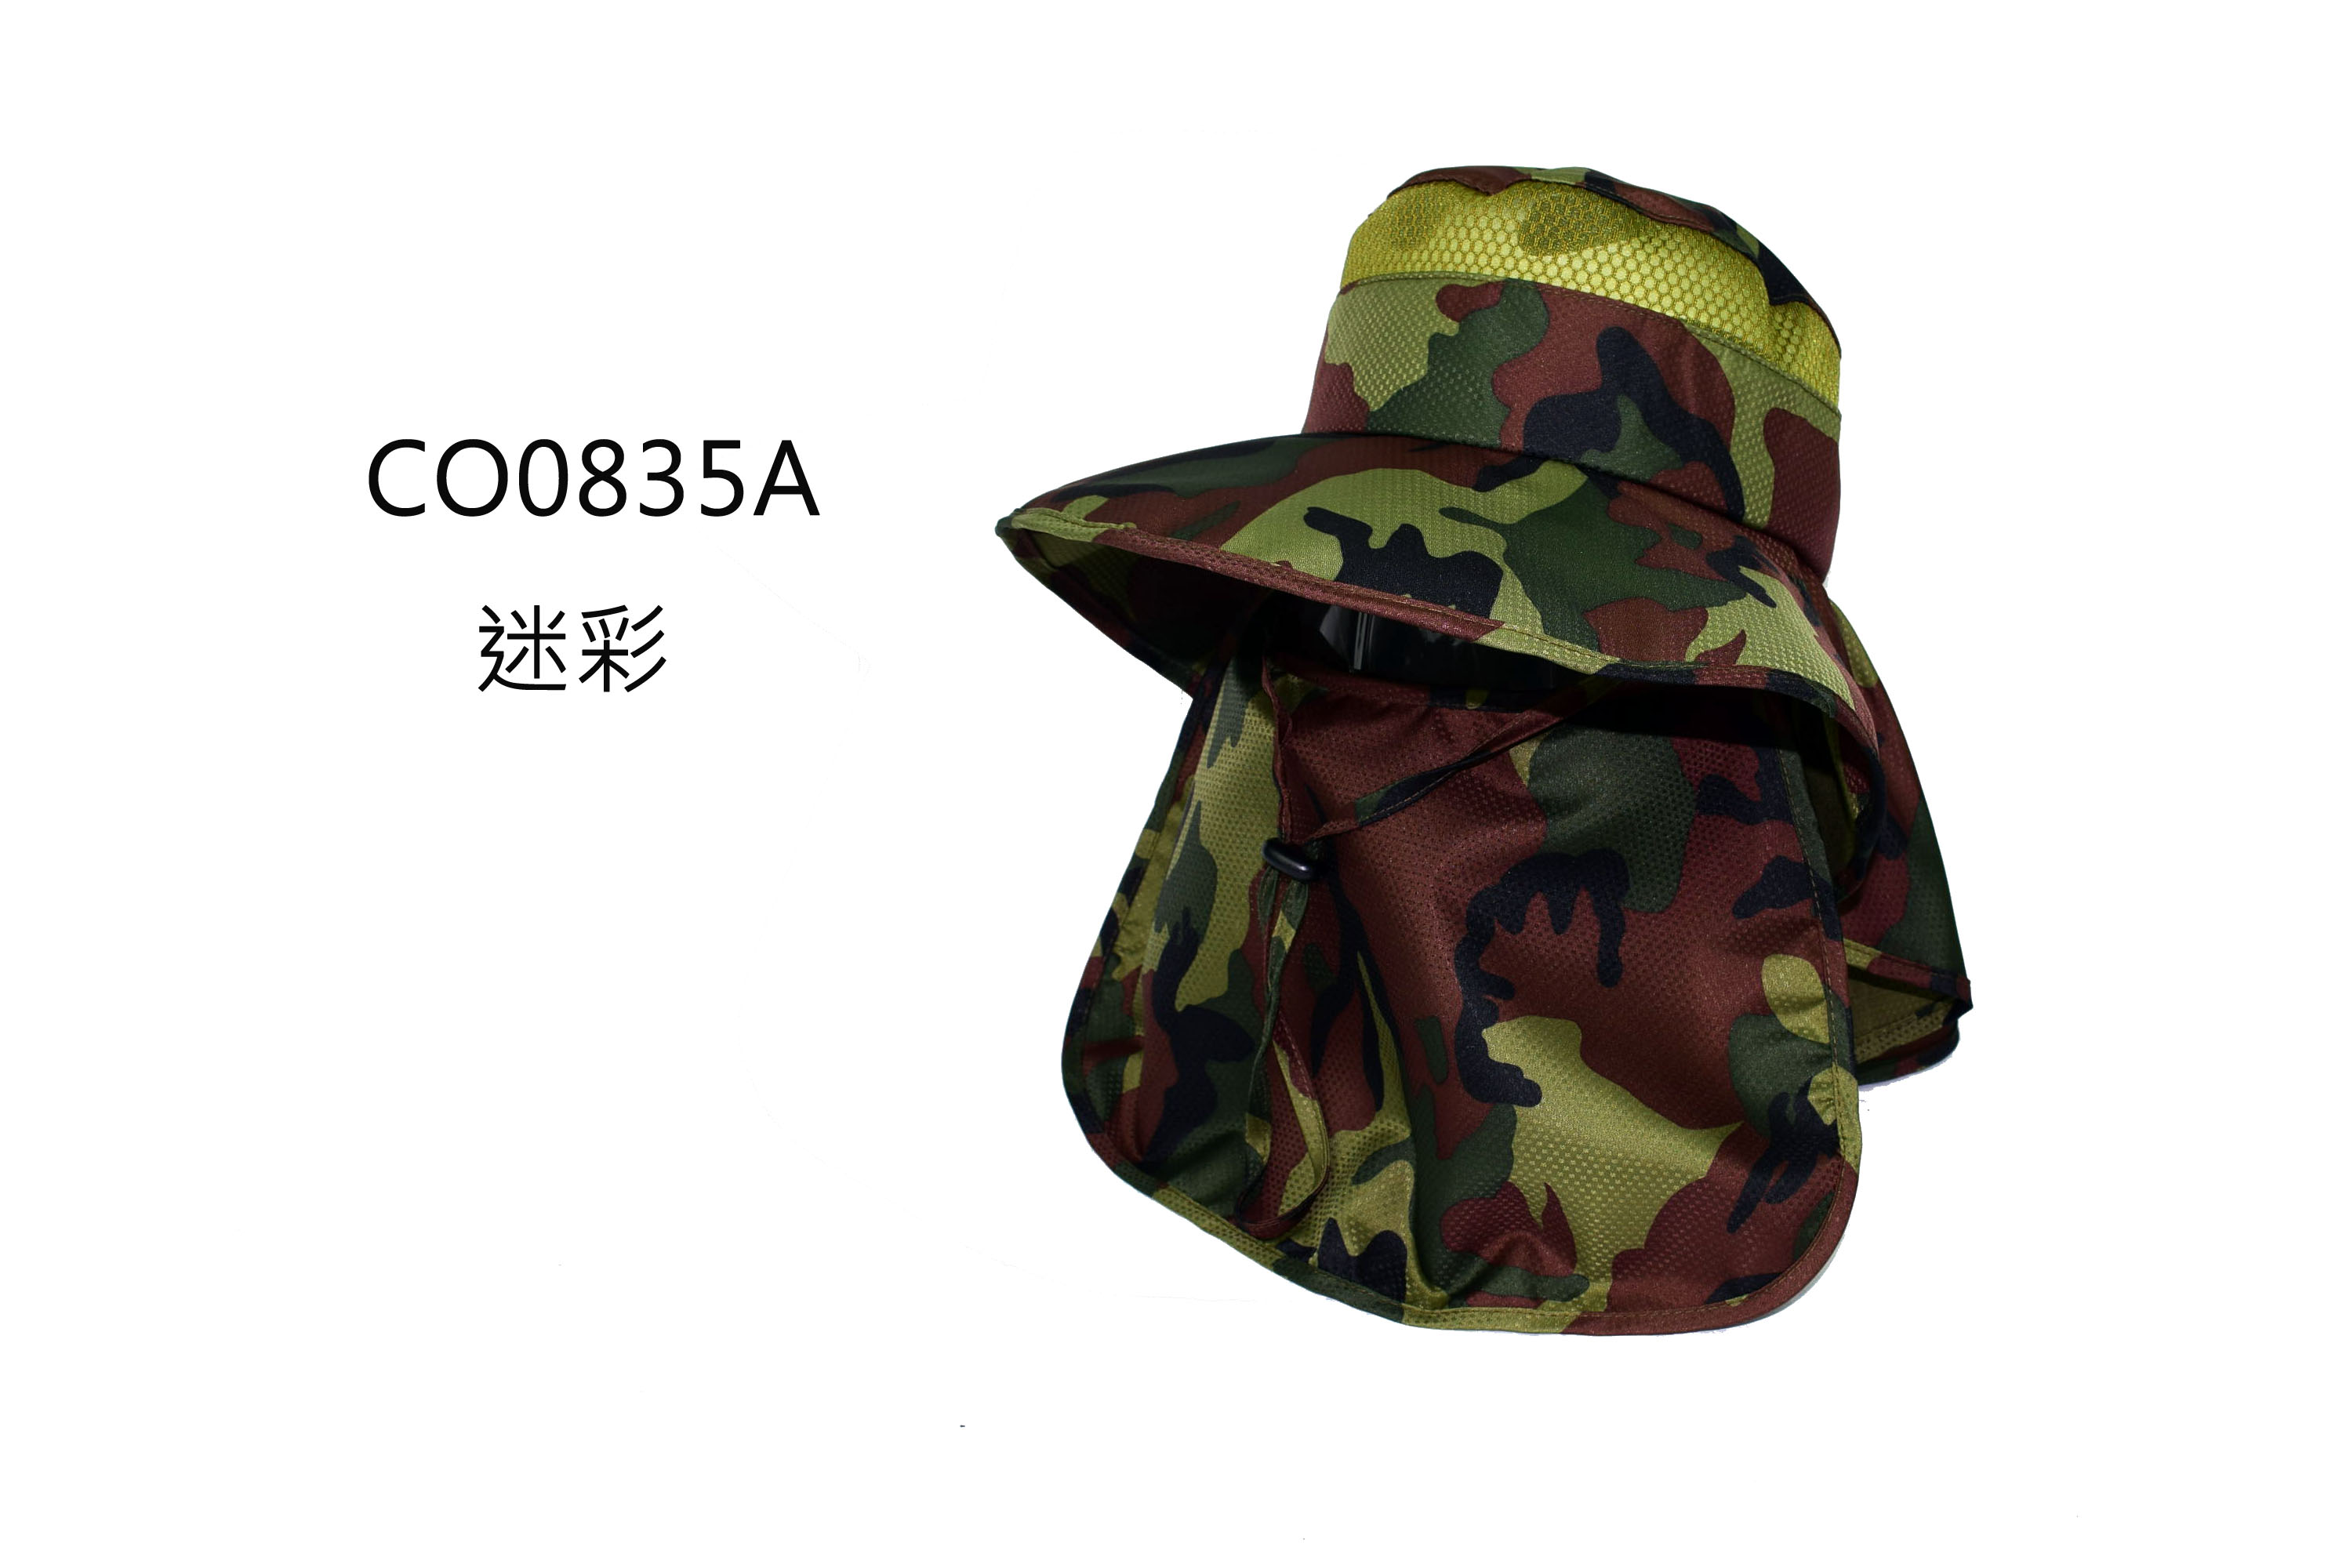 CO0835A 迷彩 全防護抗曬戶外休閒帽 點點透氣型布料 前後披型護頸 三星製帽